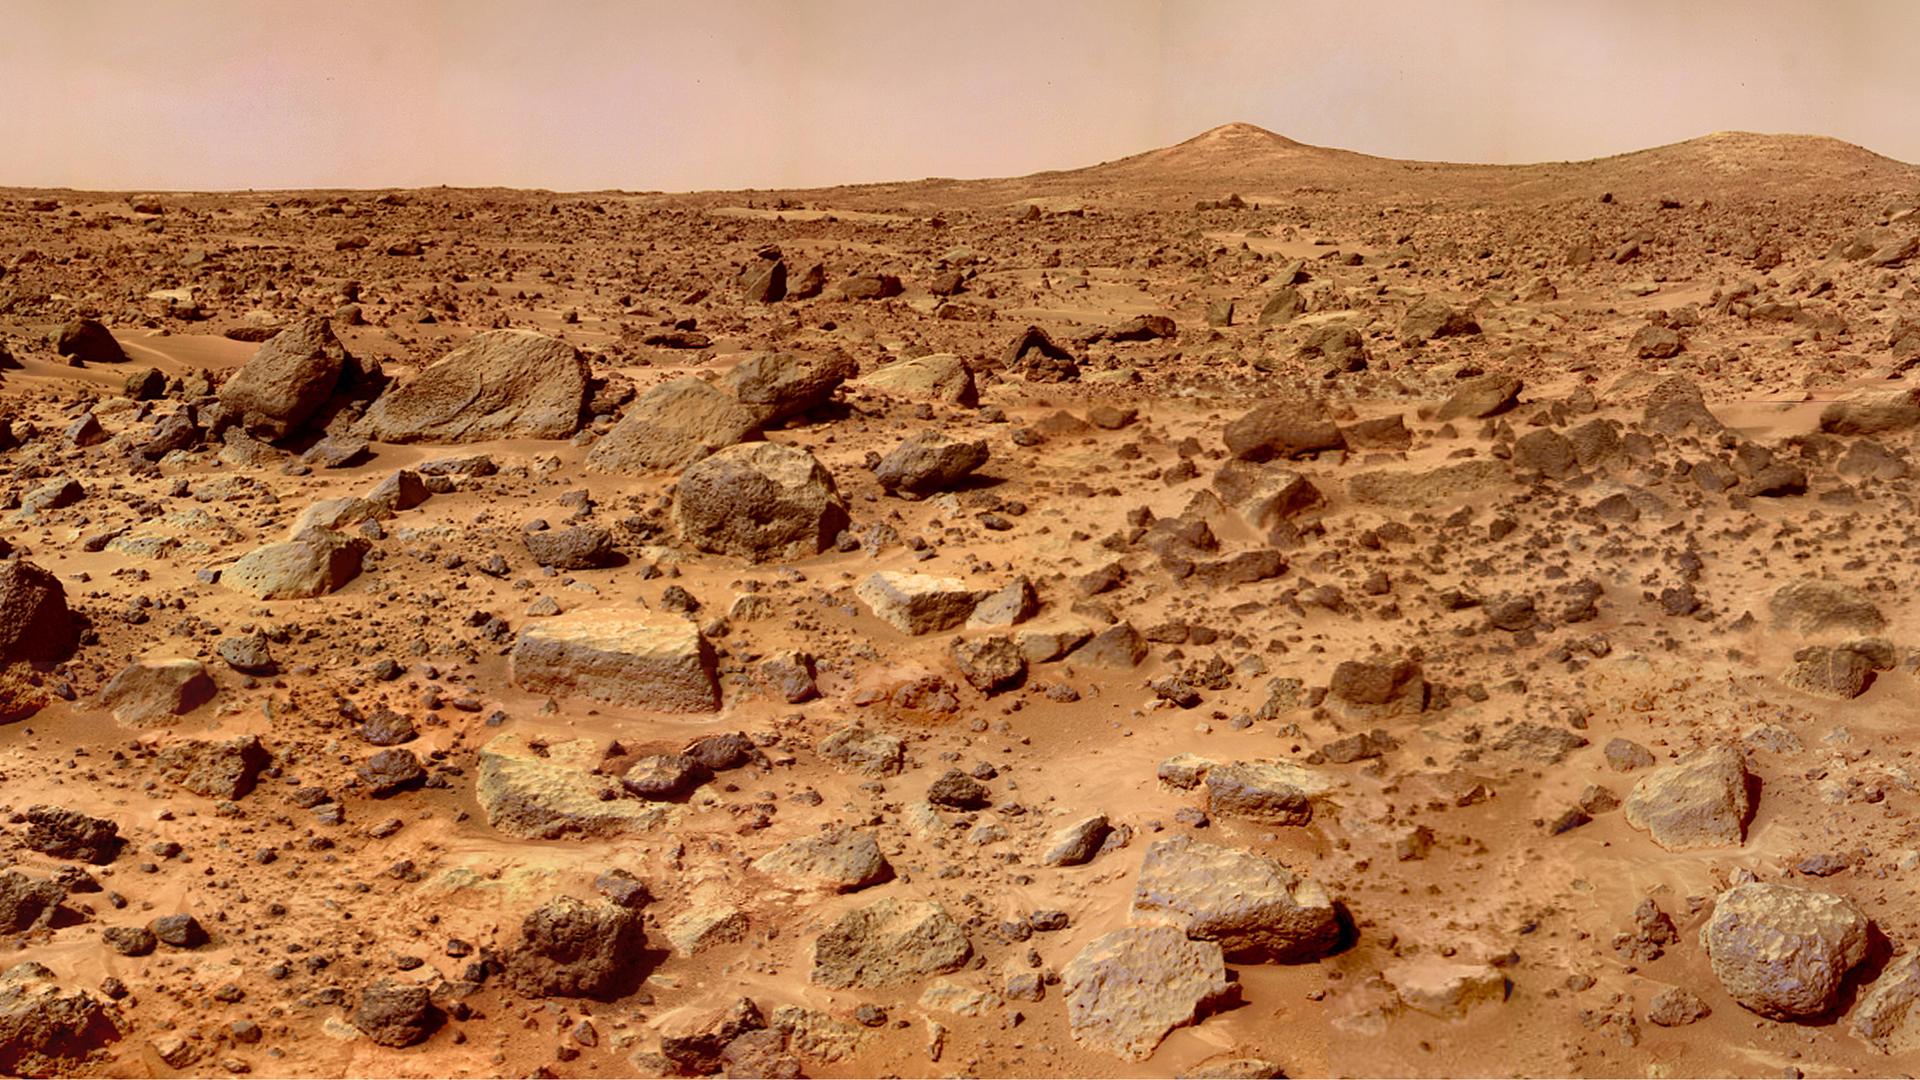 Die steinige Oberfläche des Planeten Mars